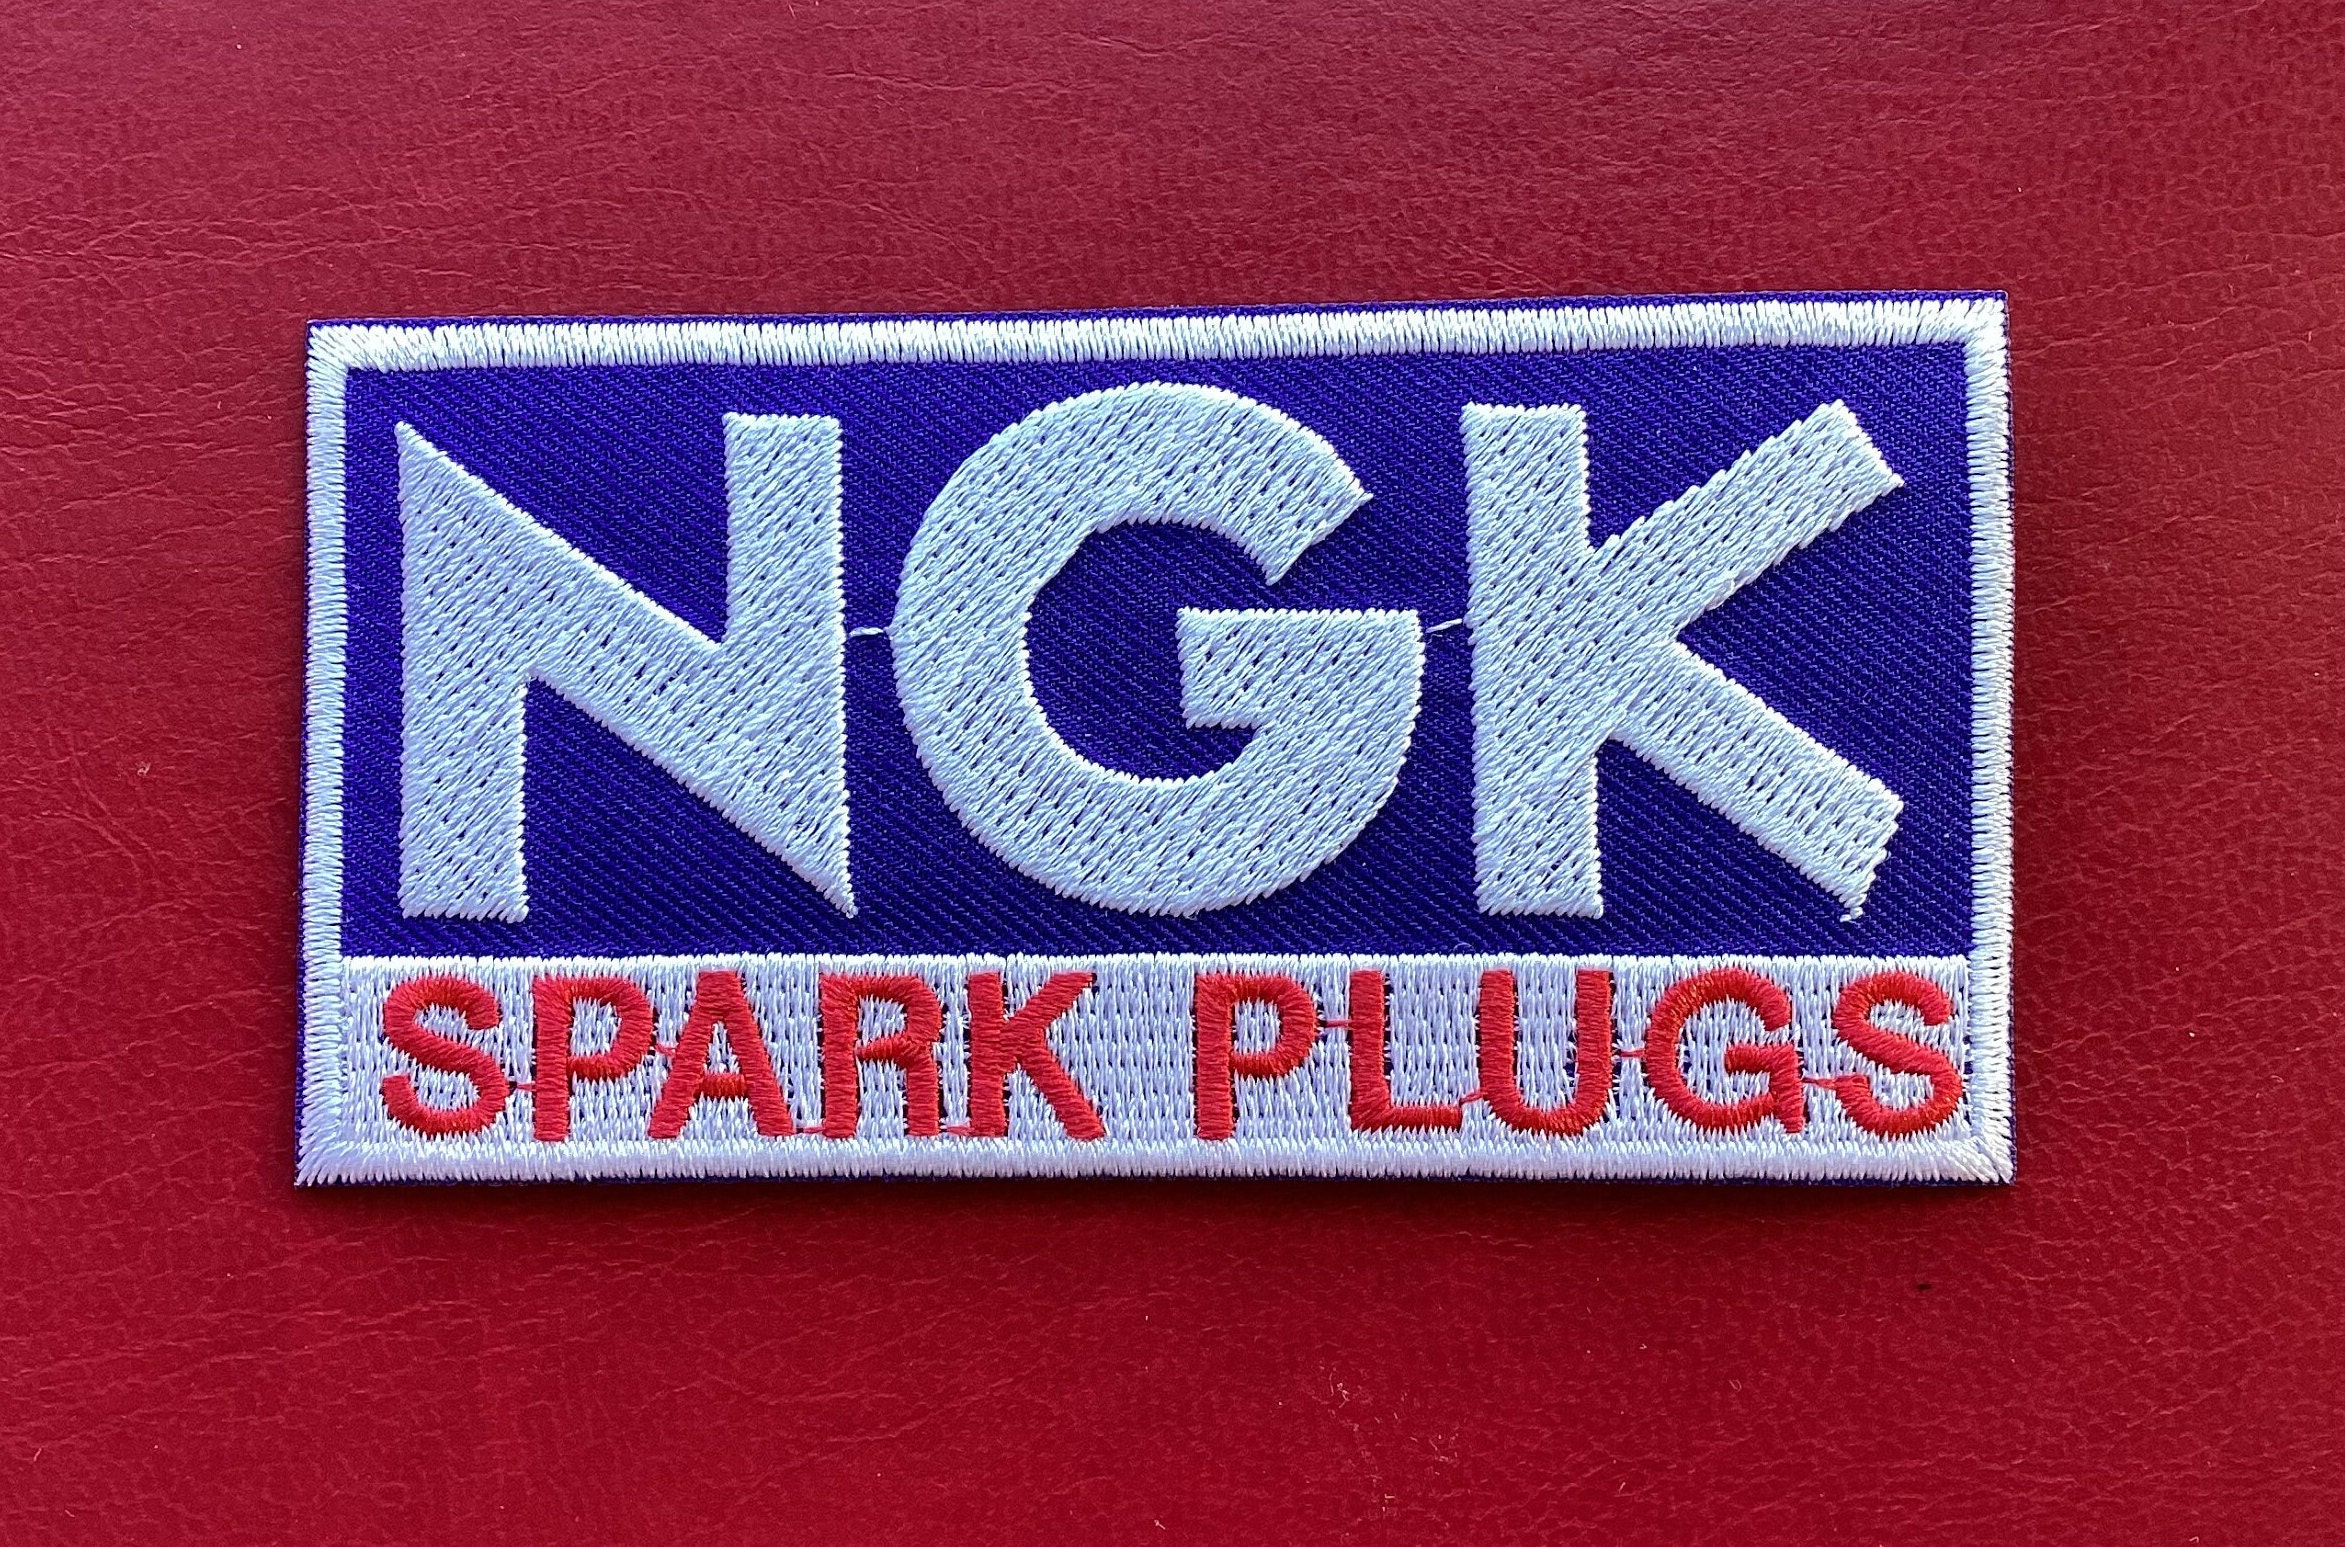 Ngk engine spark for sale  